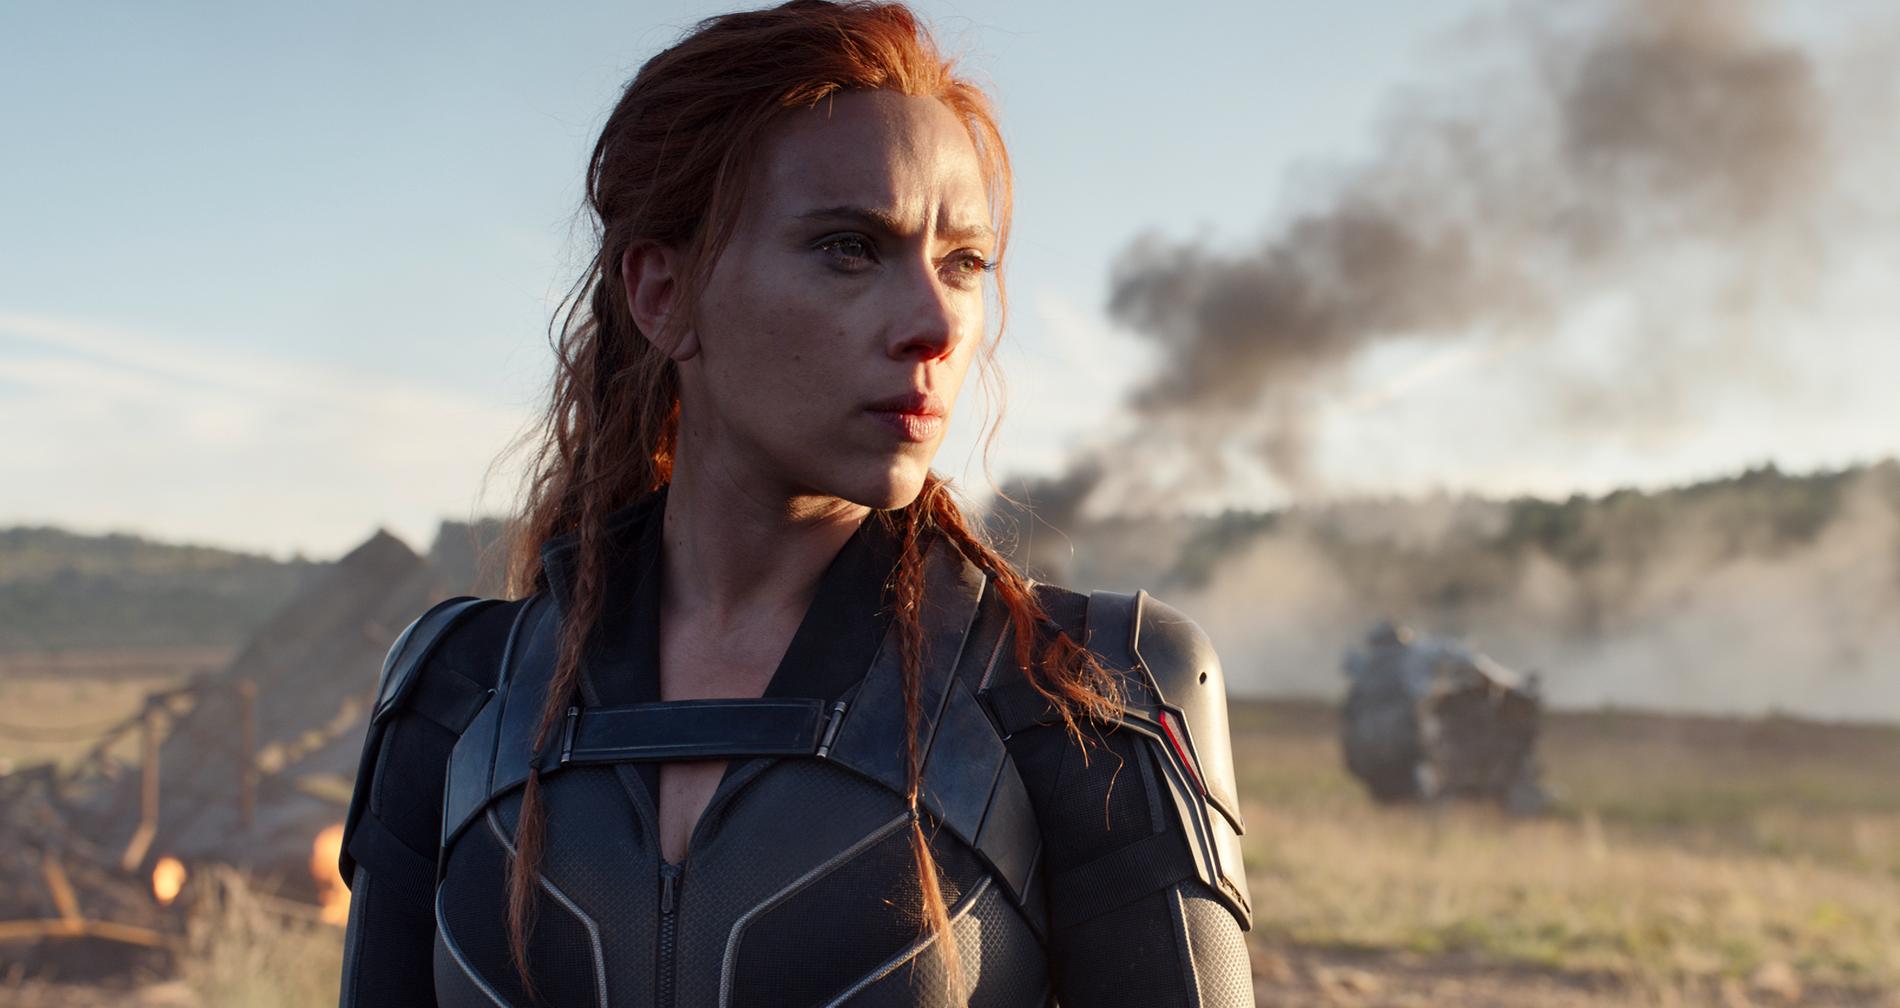 Premiären av "Black Widow", med Scarlett Johansson i huvudrollen, skjuts upp till maj 2021.